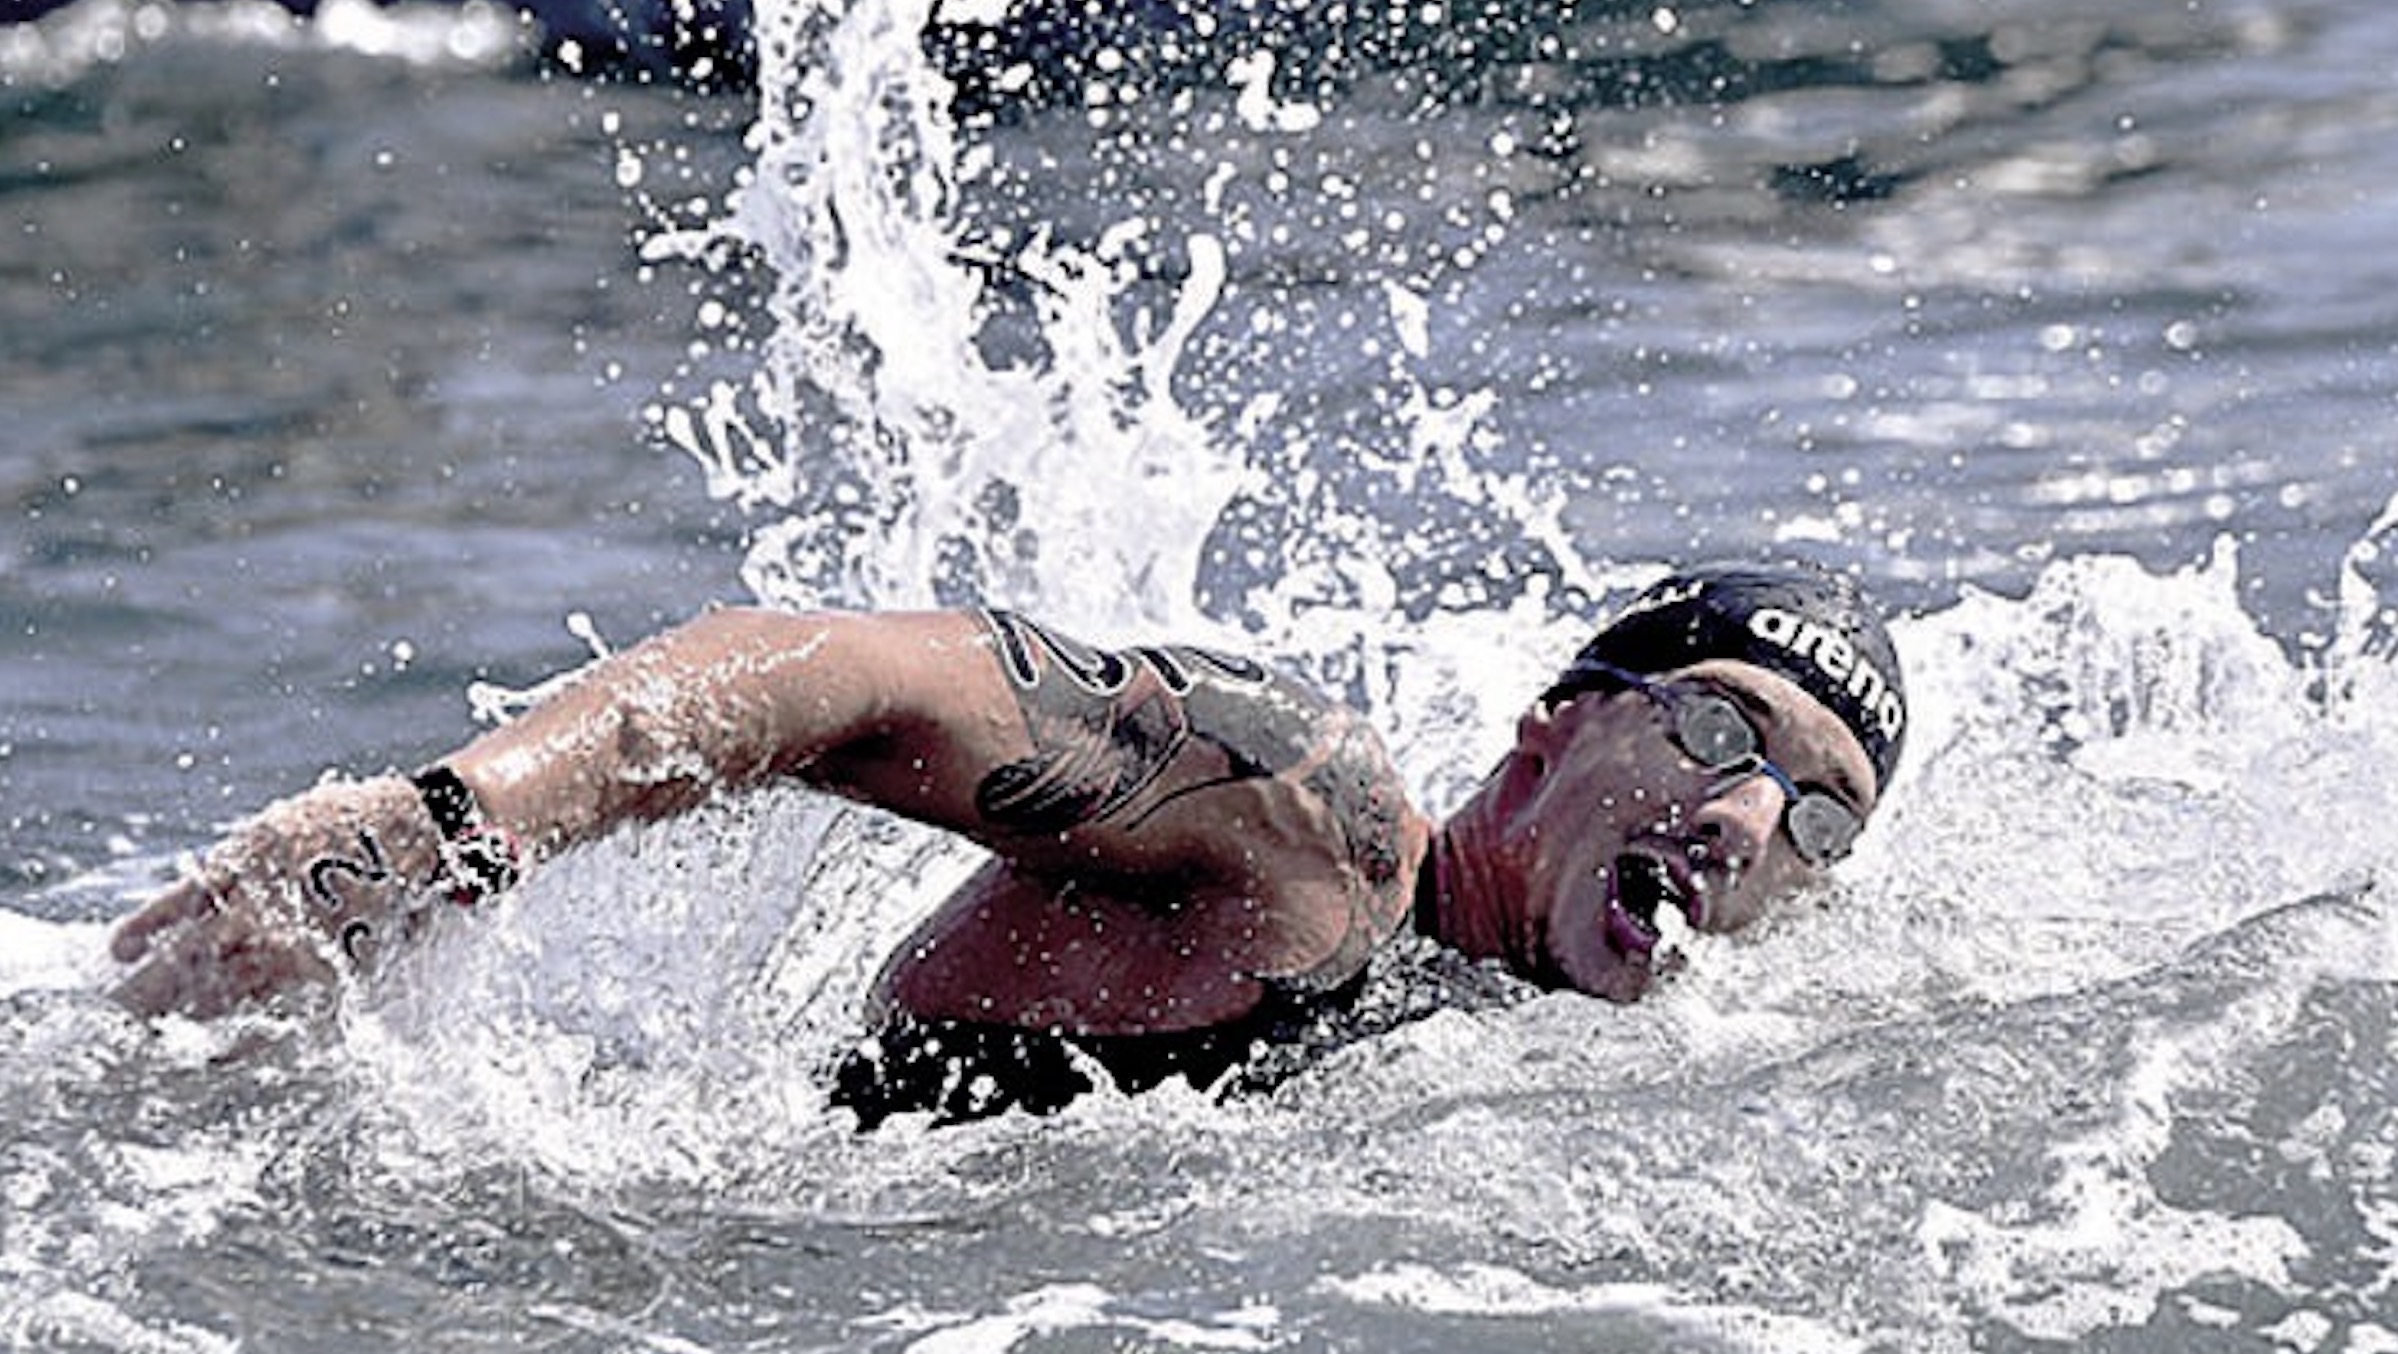 Il campione di nuoto Federico Vanelli salva un bambino nell’Adda: “Stava annegando”